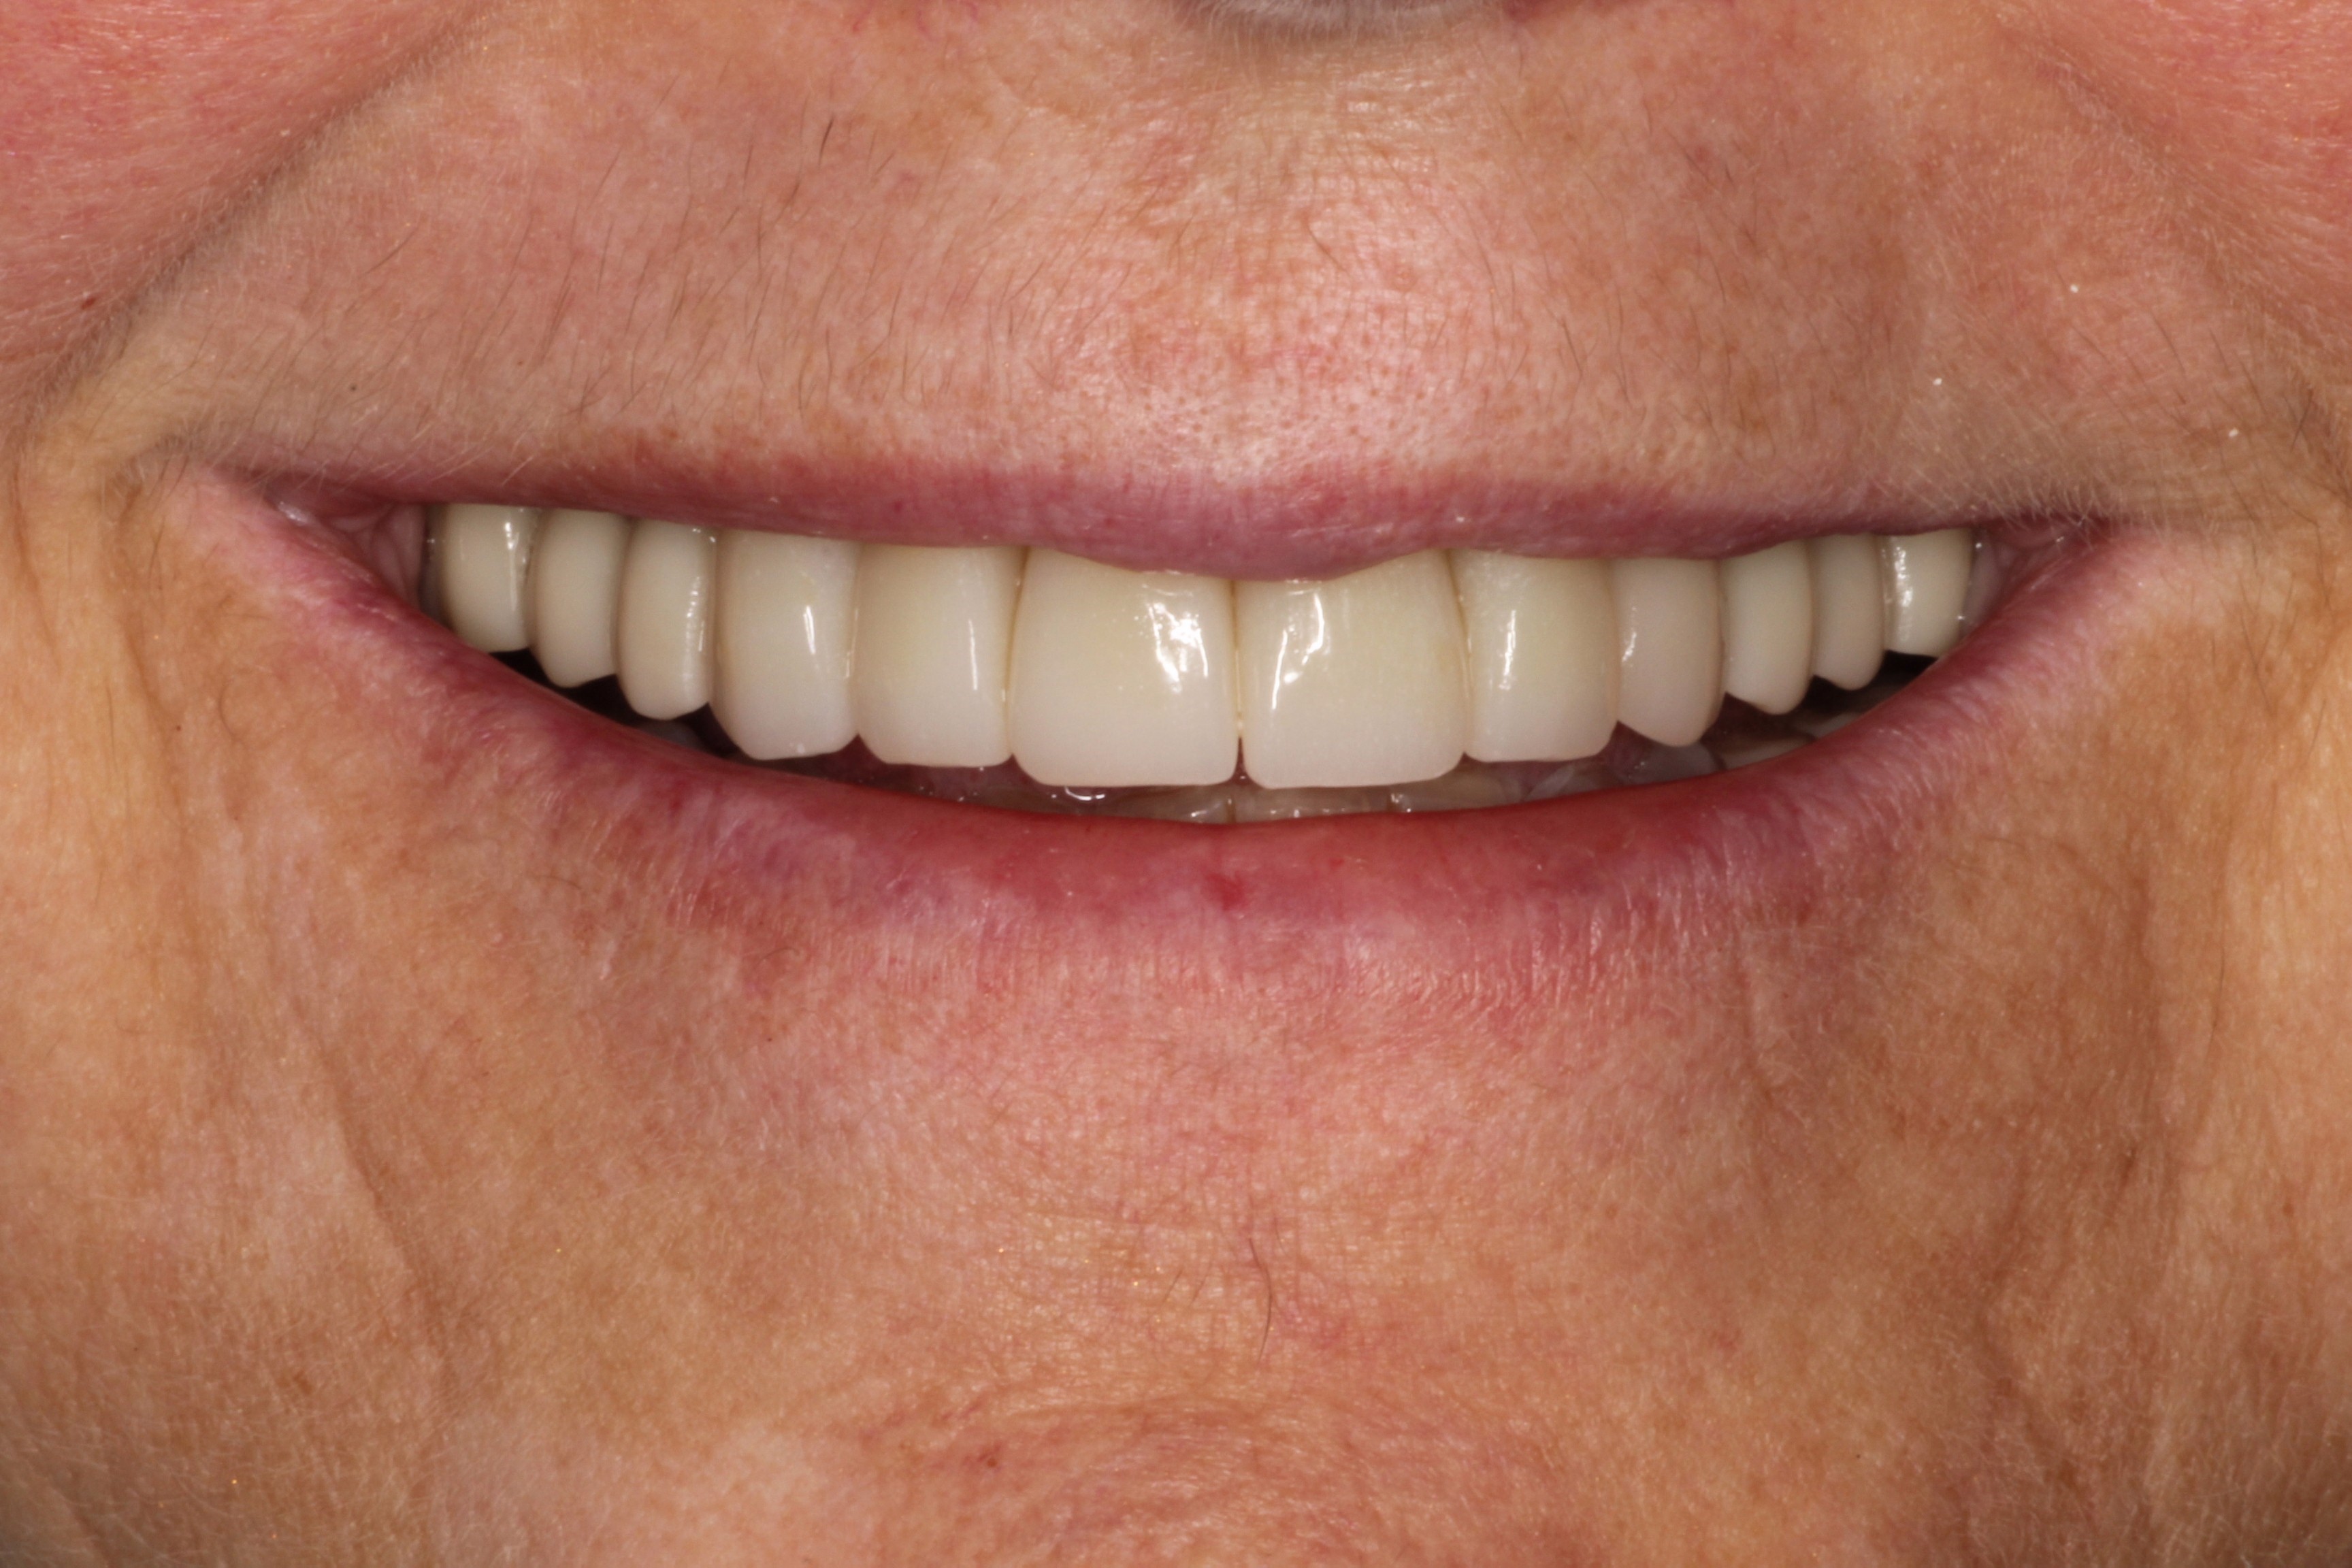 Healthy smile after restorative dentistry